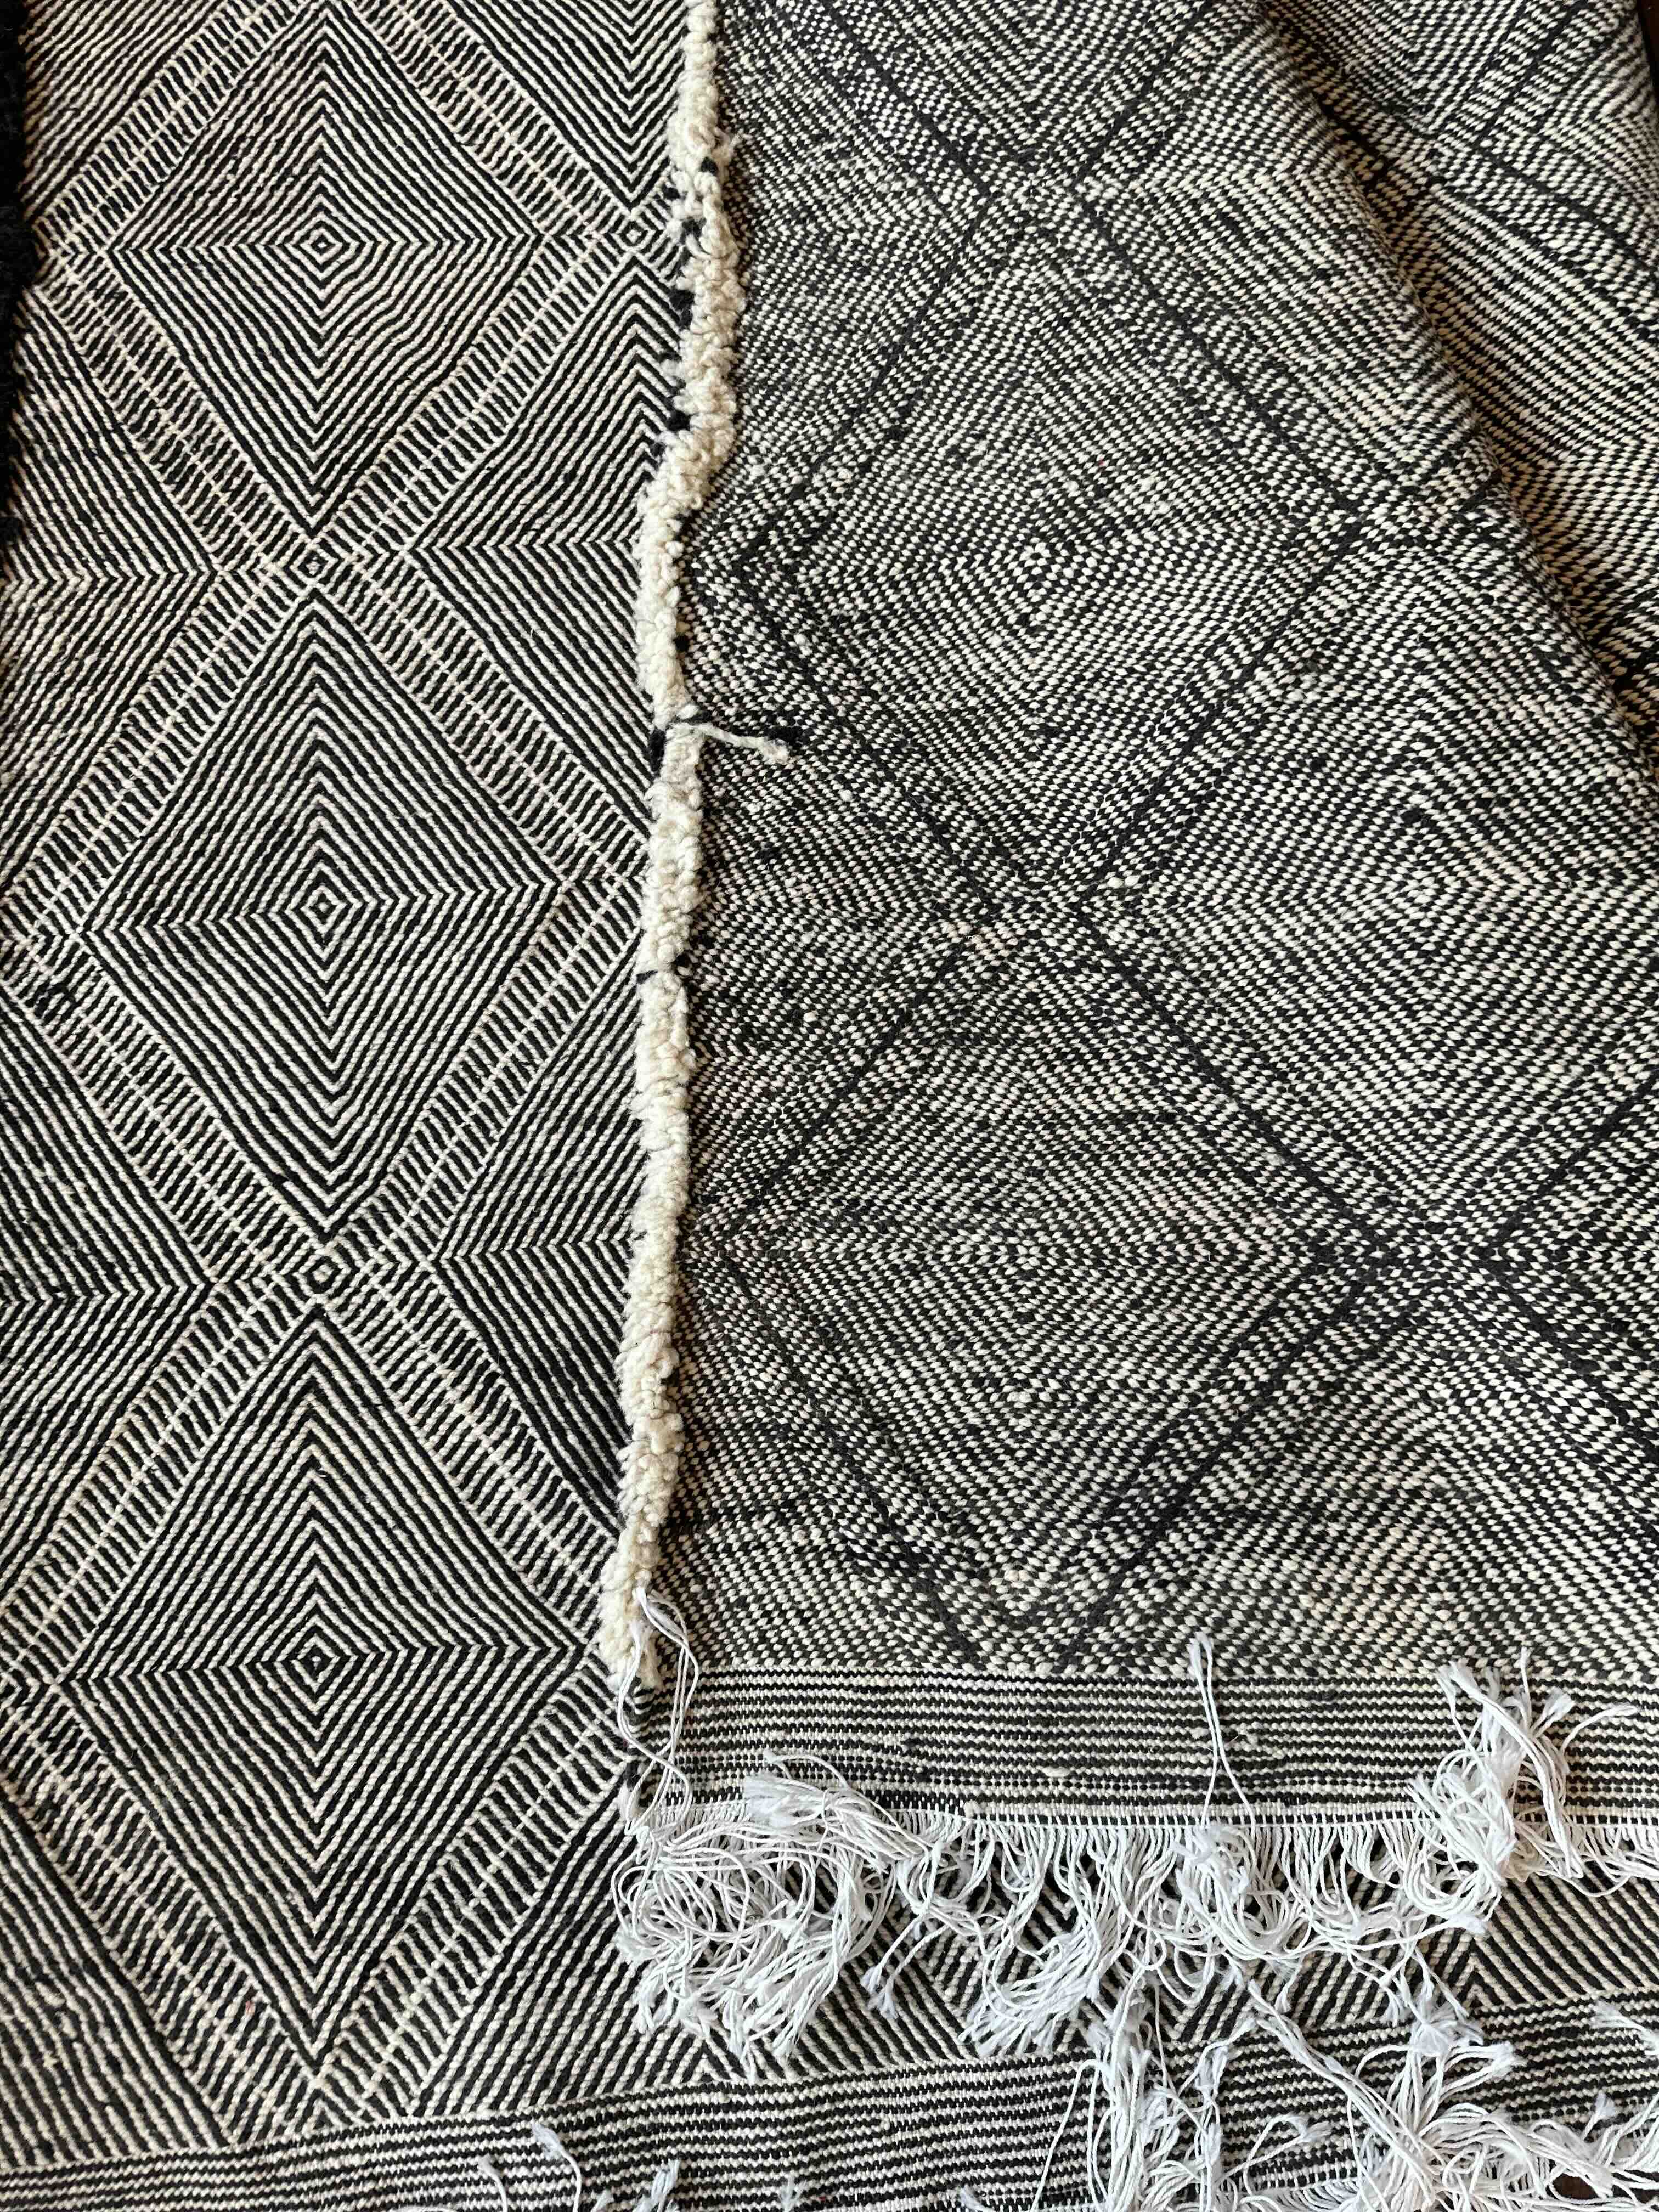 Stor Marrokansk uld gulvtæppe i Sort og Hvid farver.